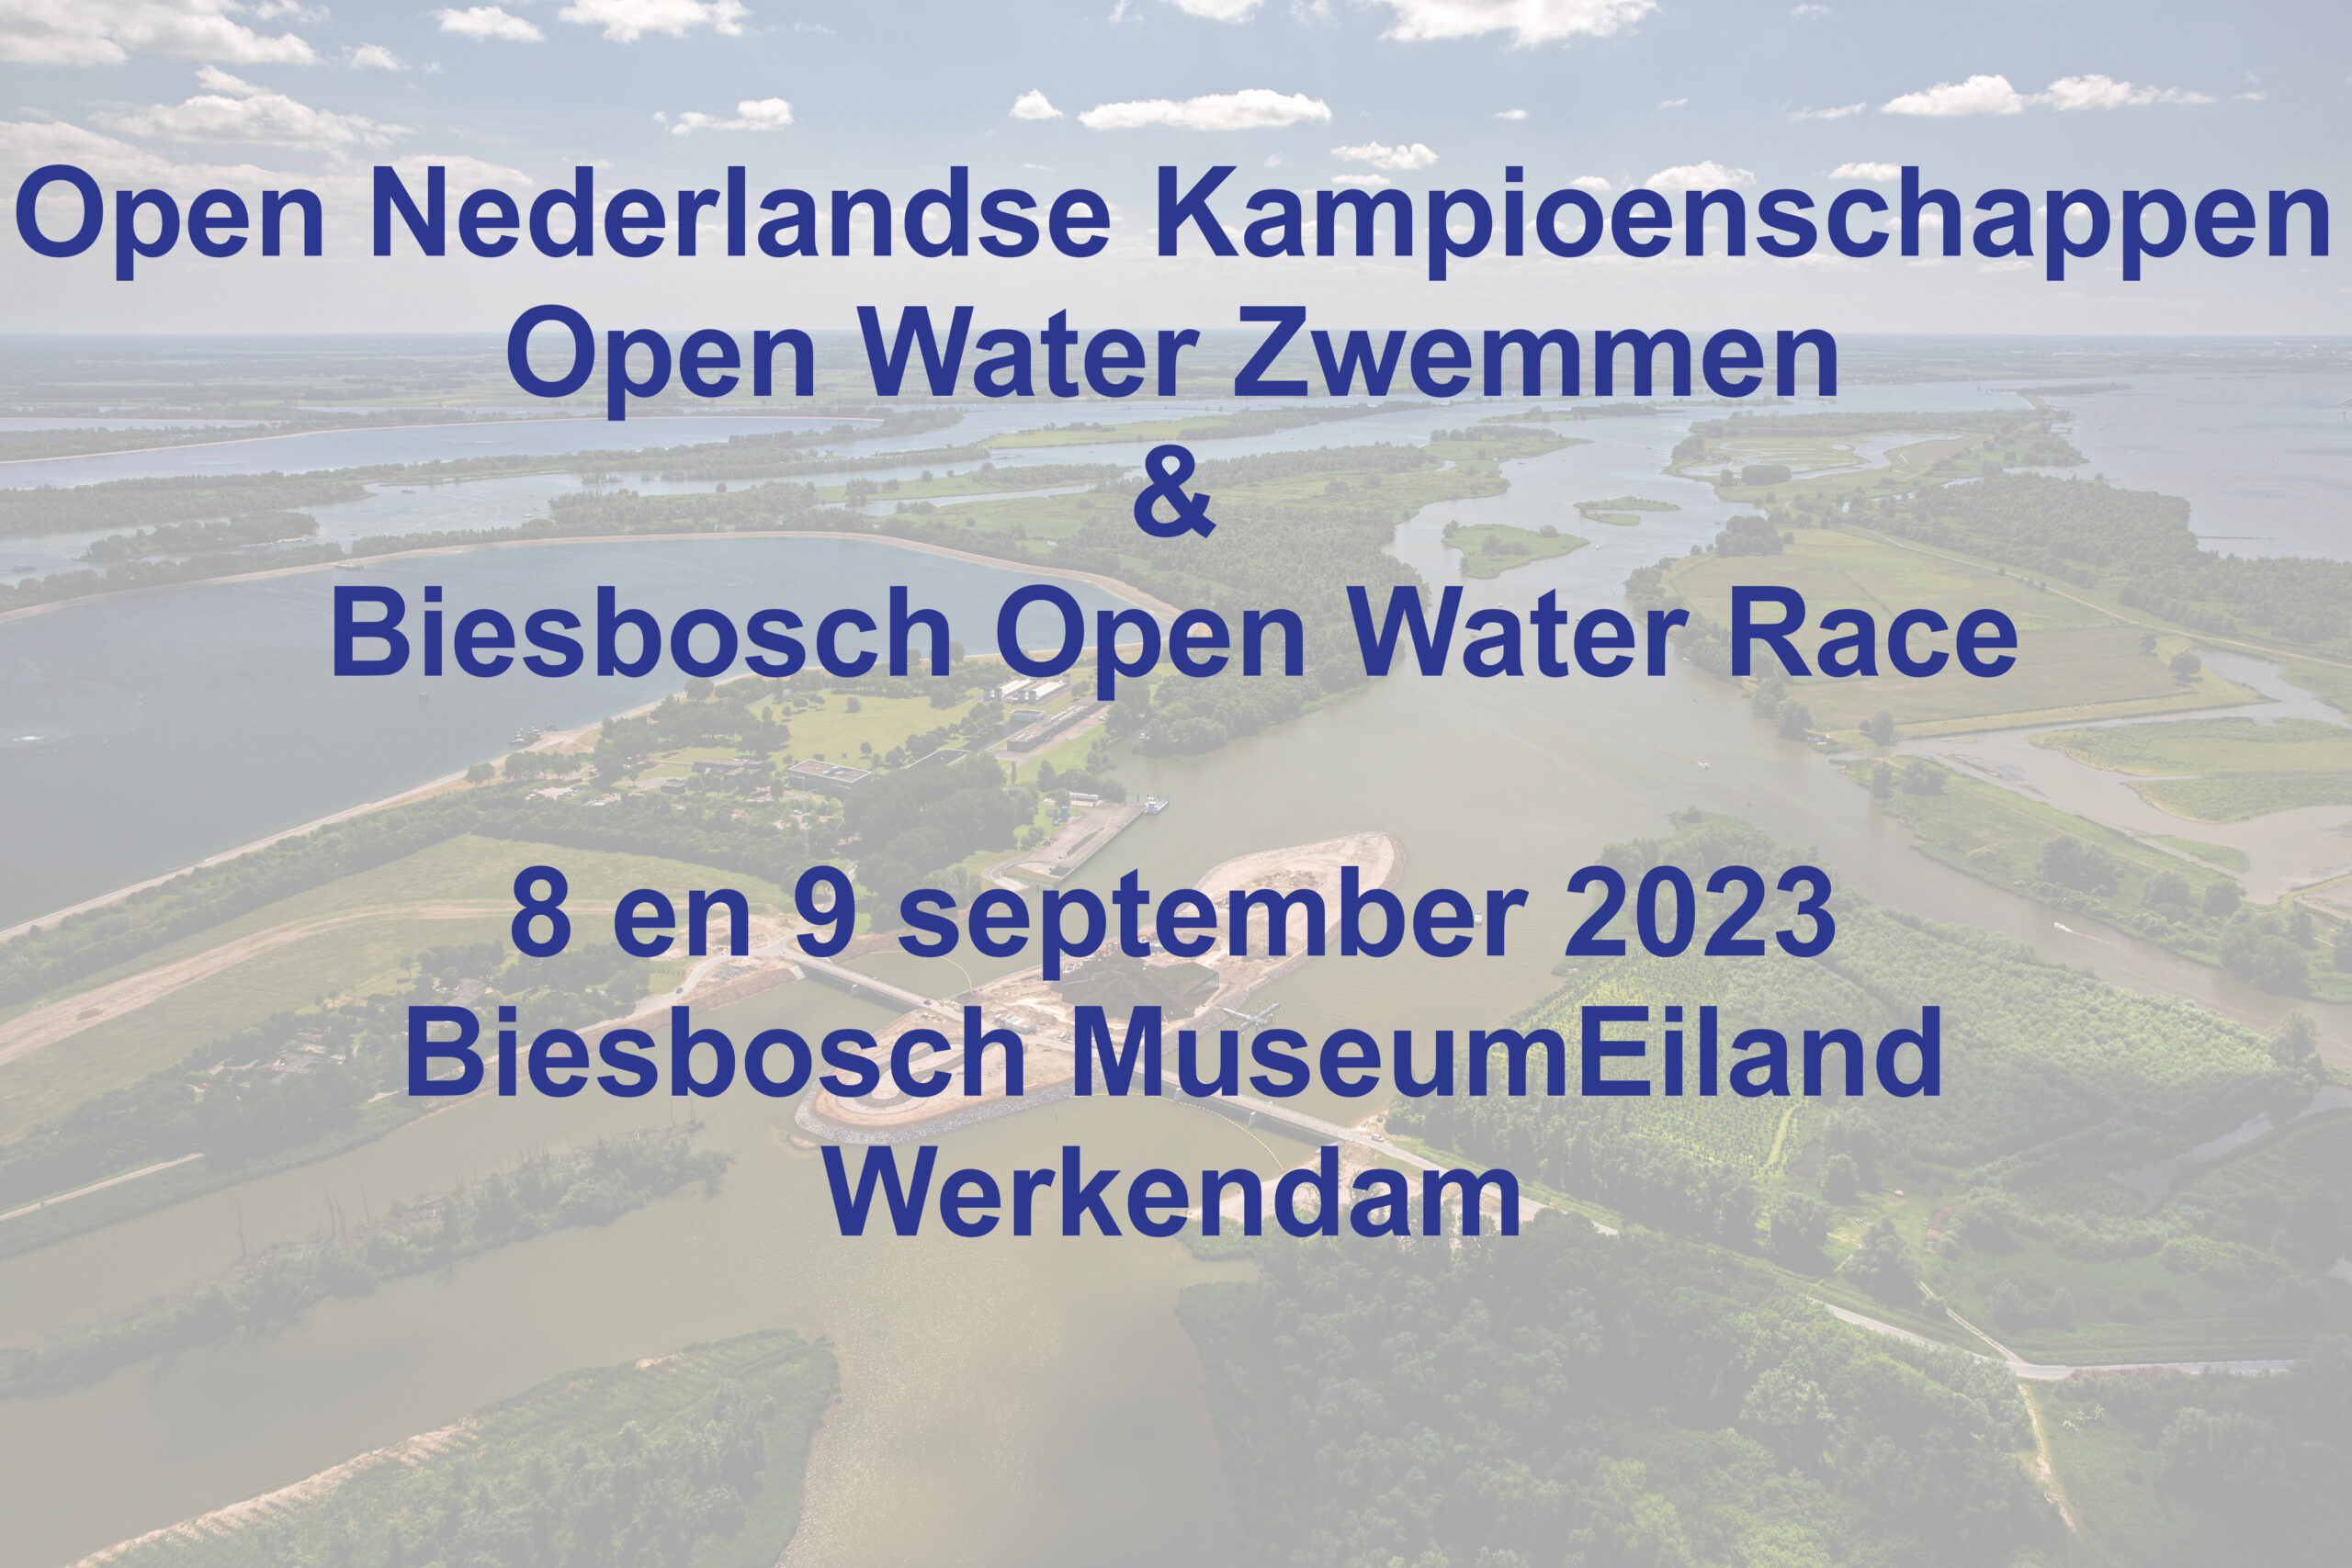 Biesbosch Open Water Race